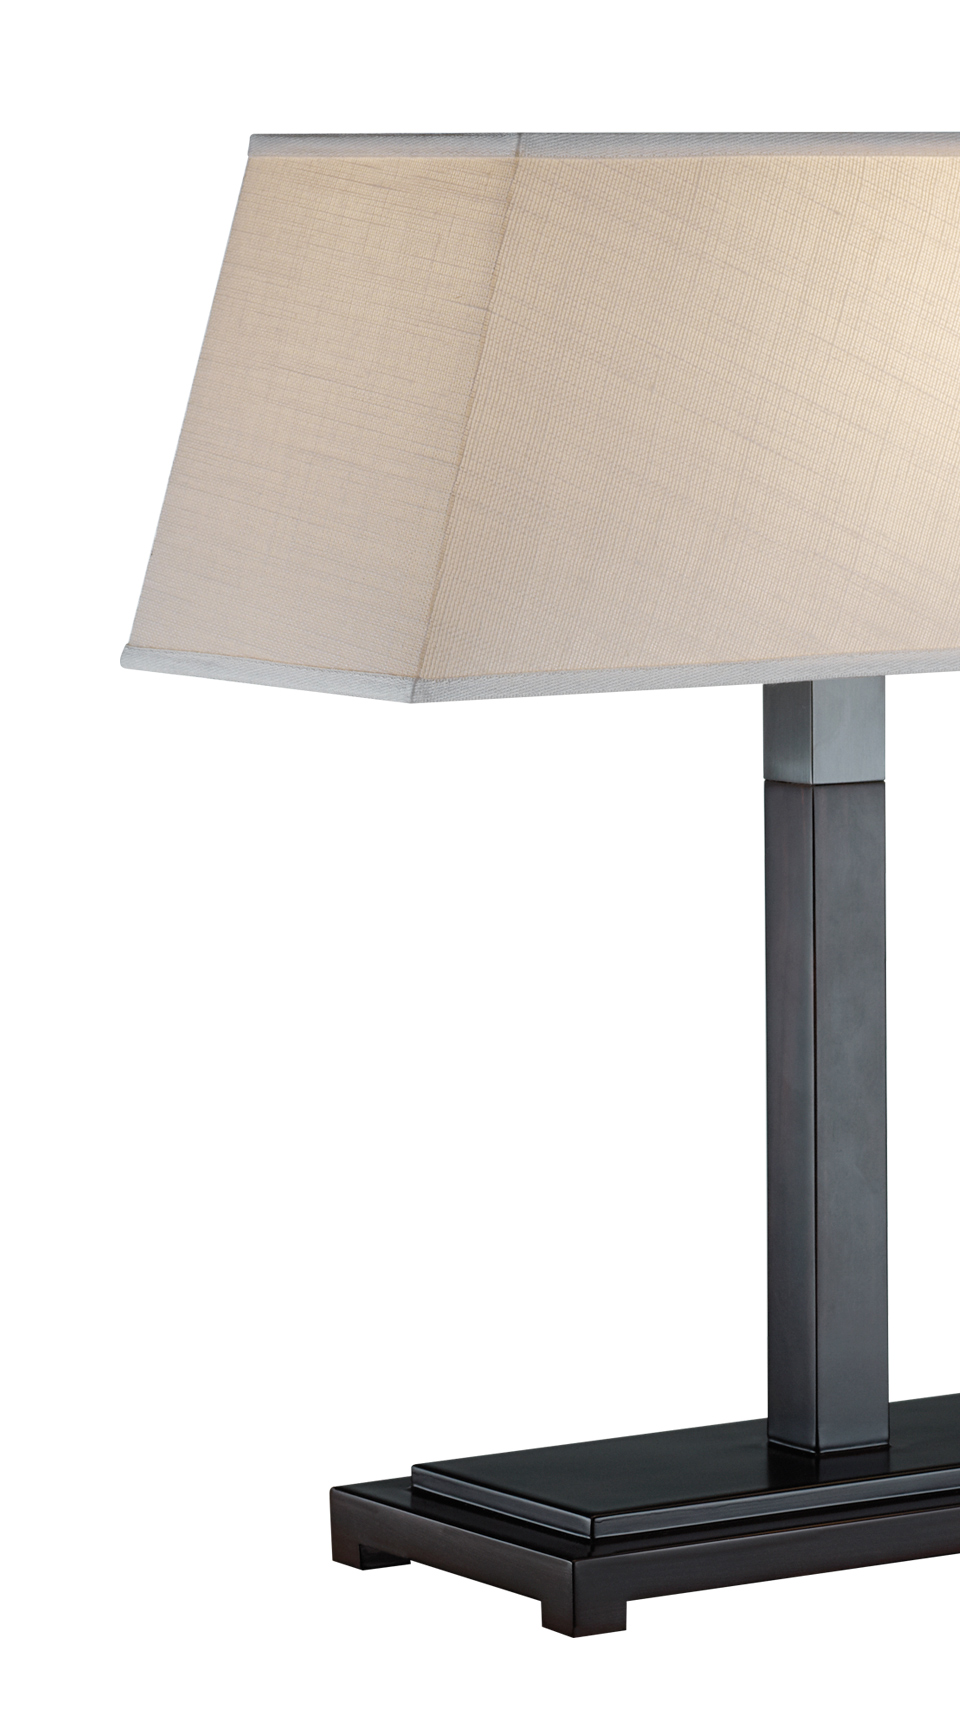 Warry è una lampada da tavolo a LED con struttura in legno, dettagli in bronzo e paralume in lino, cotone o seta bordata a mano, del catalogo di Promemoria | Promemoria